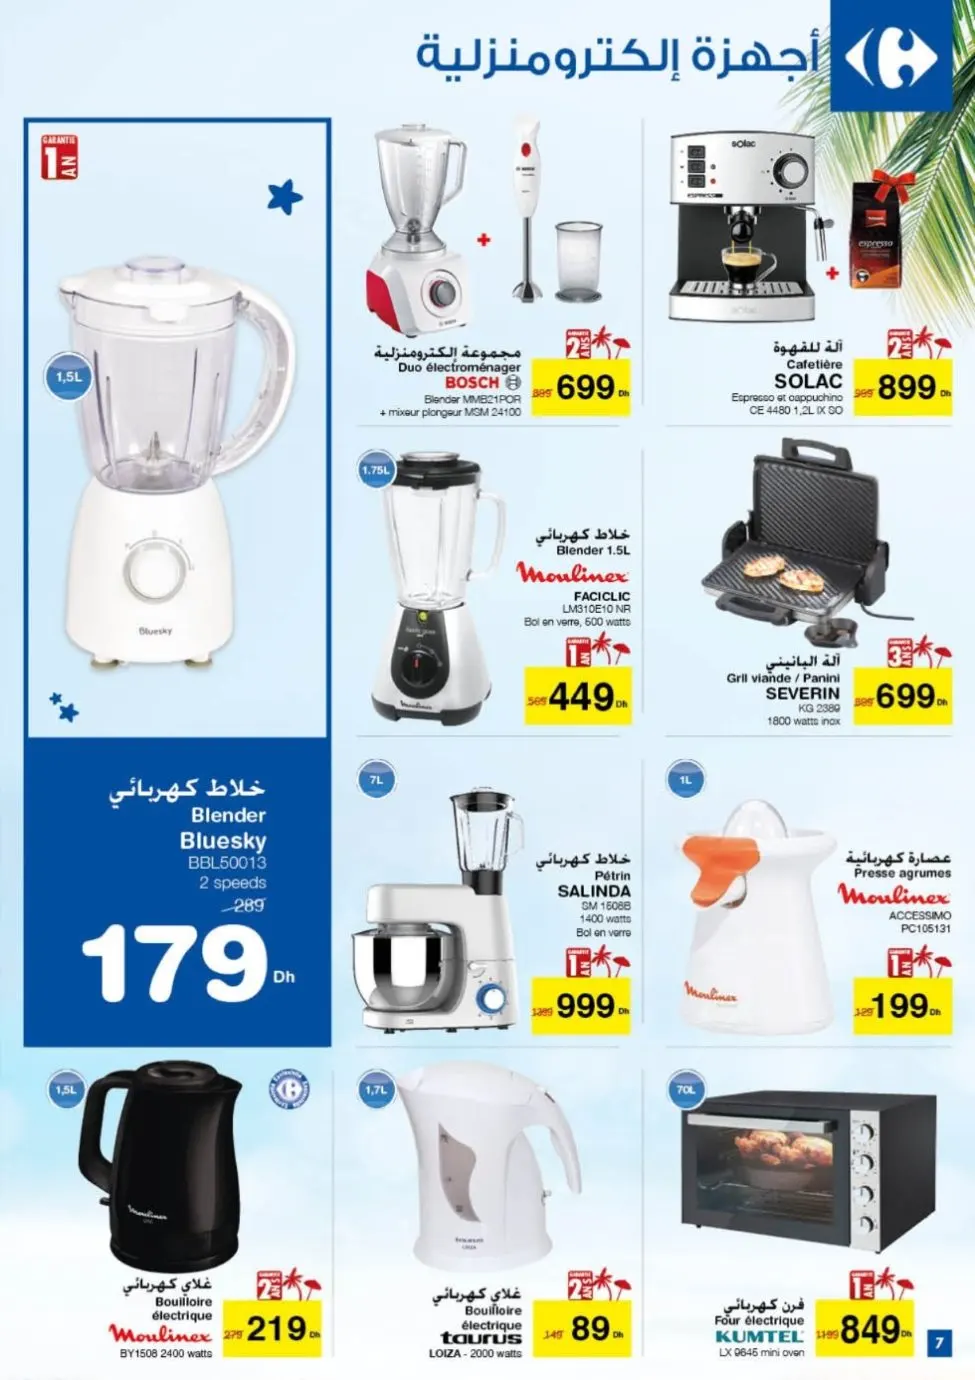 Catalogue Carrefour Maroc du 25 Juin au 15 Juillet 2019